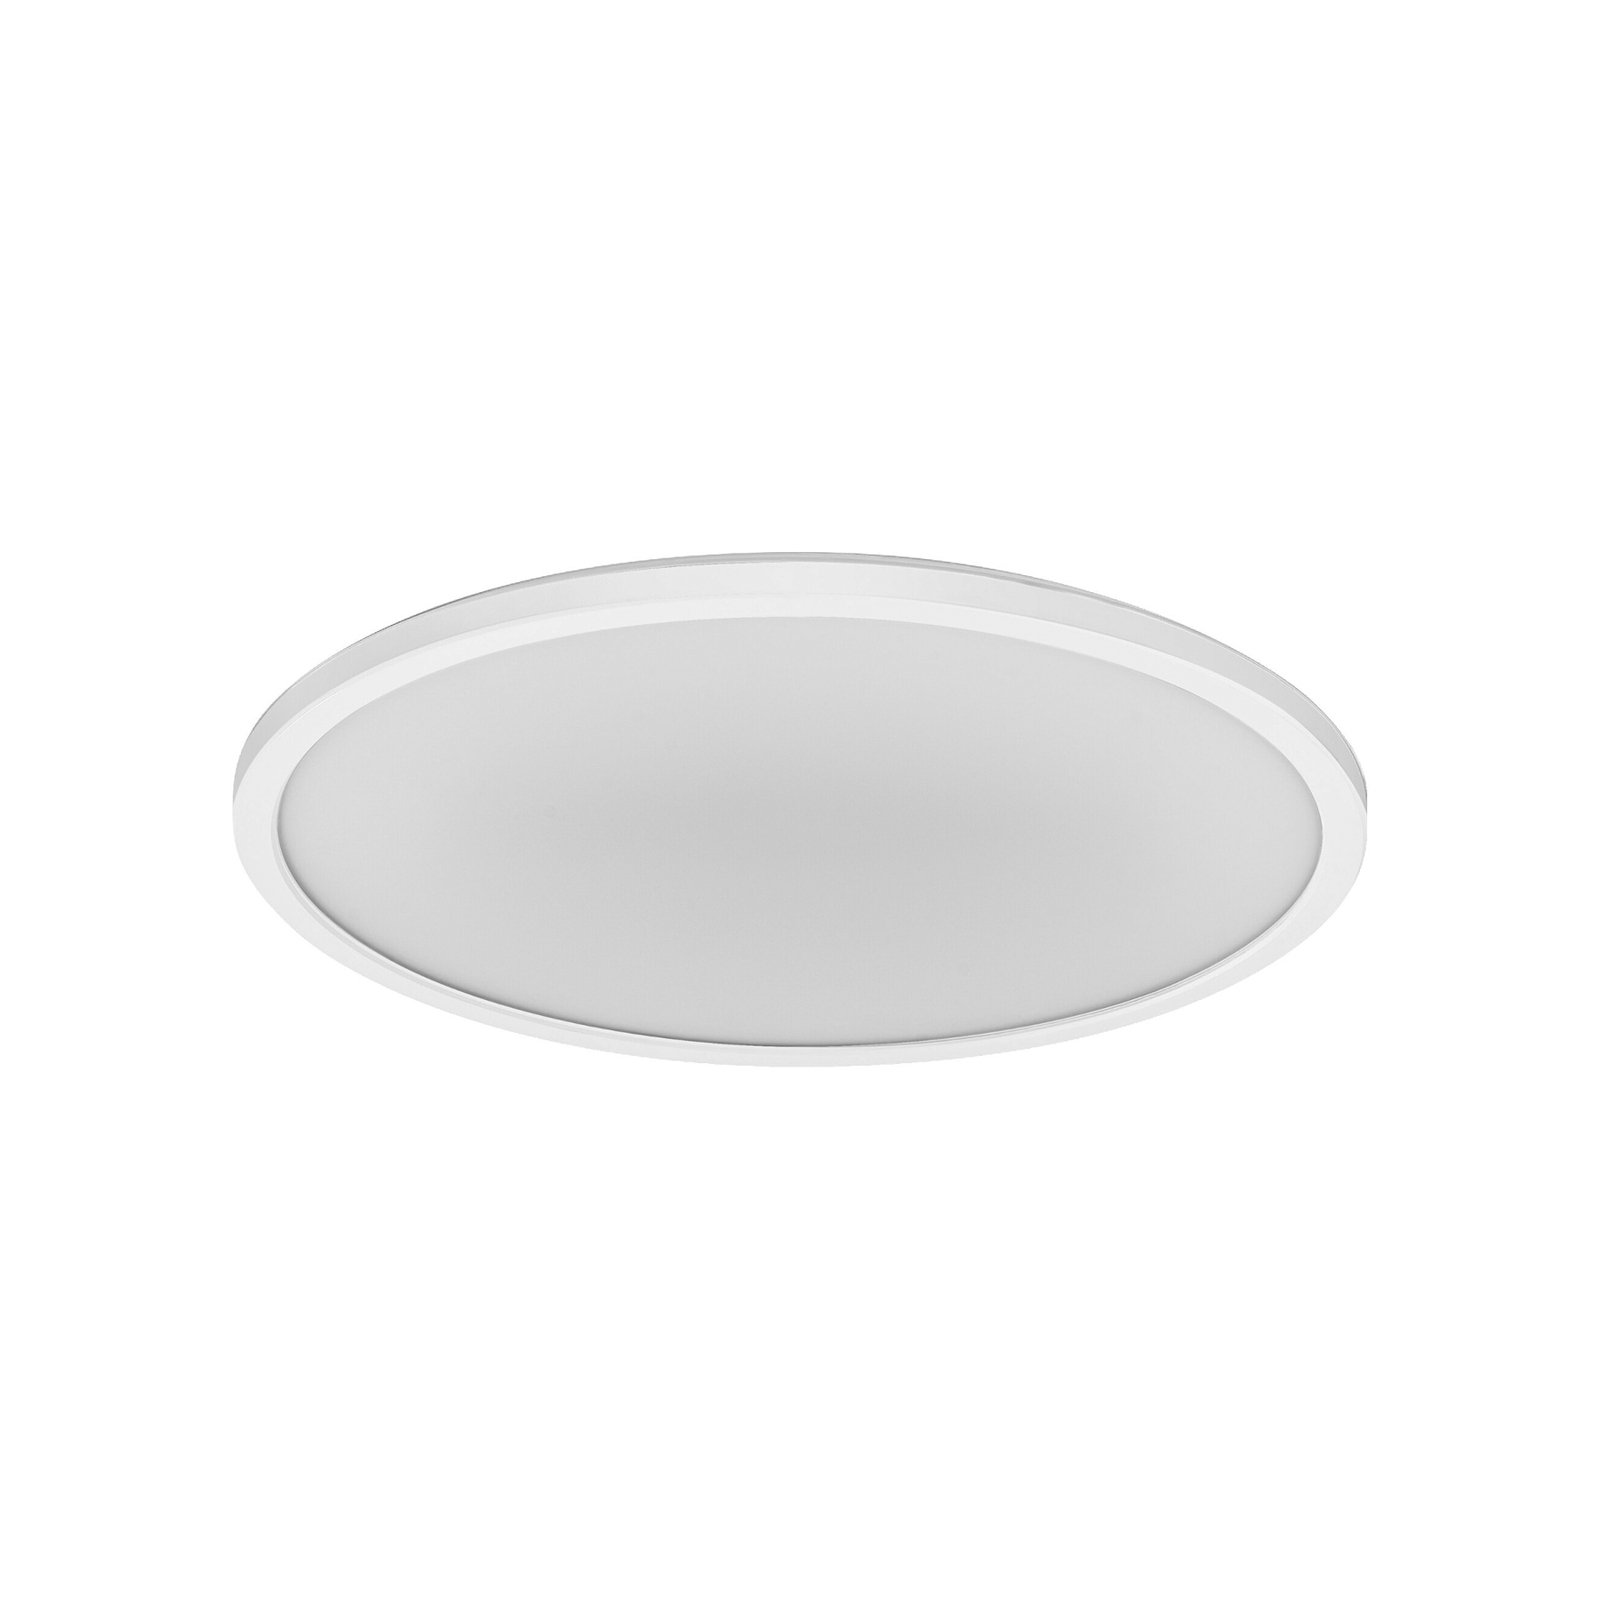 LEDVANCE SMART+ WiFi Orbis Ultra Slim-bakgrunnsbelysning, Ø40cm, hvit